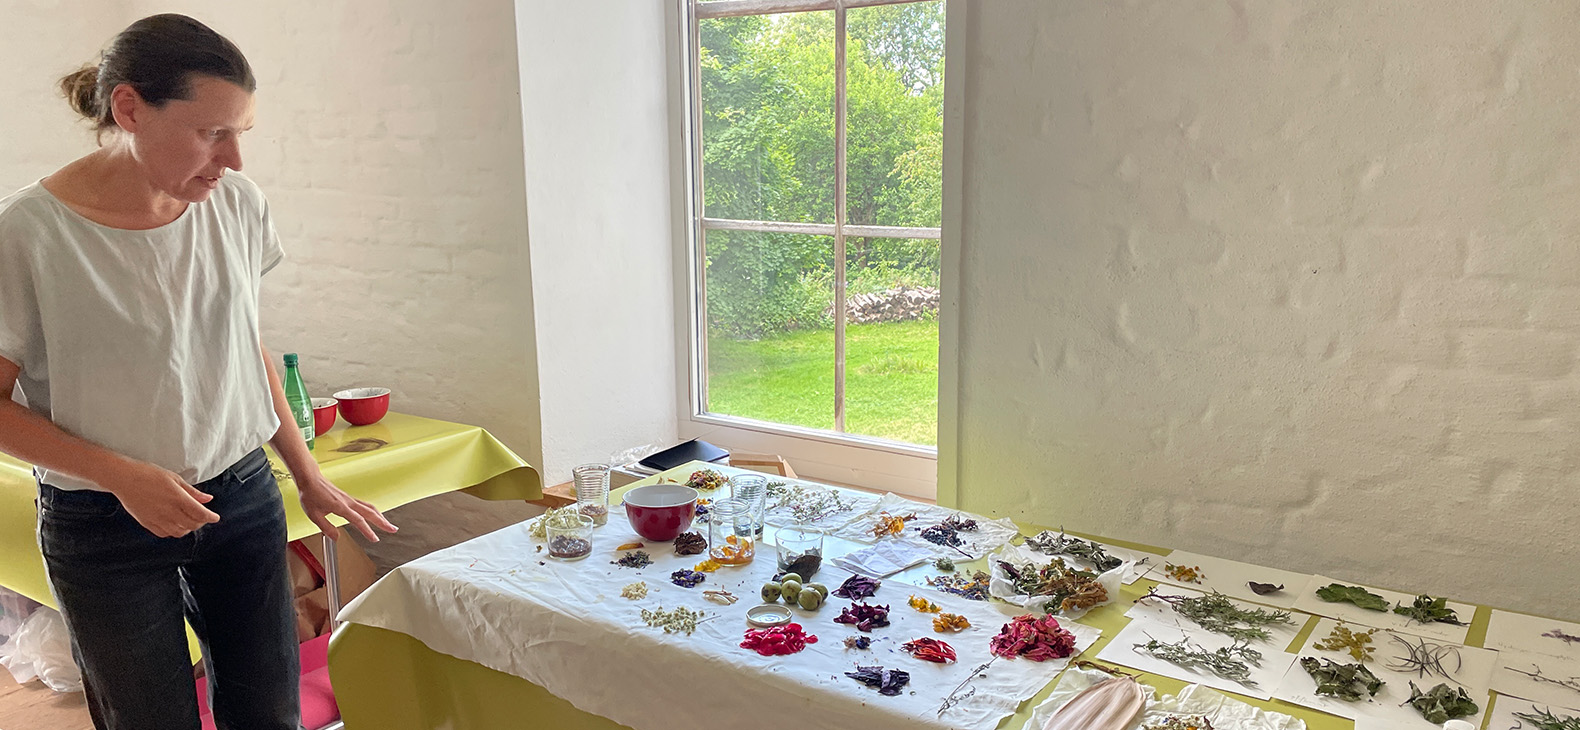 Künstlerin Valerie Leray in ihrem Atelier am Schafhof - Europäisches Kunstforum Oberbayern. Sie betrachtet ihr auf dem Tisch arrangiertes Arbeitsmaterial, welches aus Pflanzen, Blüten und kleinen Früchten besteht. Im HIntergrund kann man durch ein Fenster in den Garten des Schafhofs sehen.